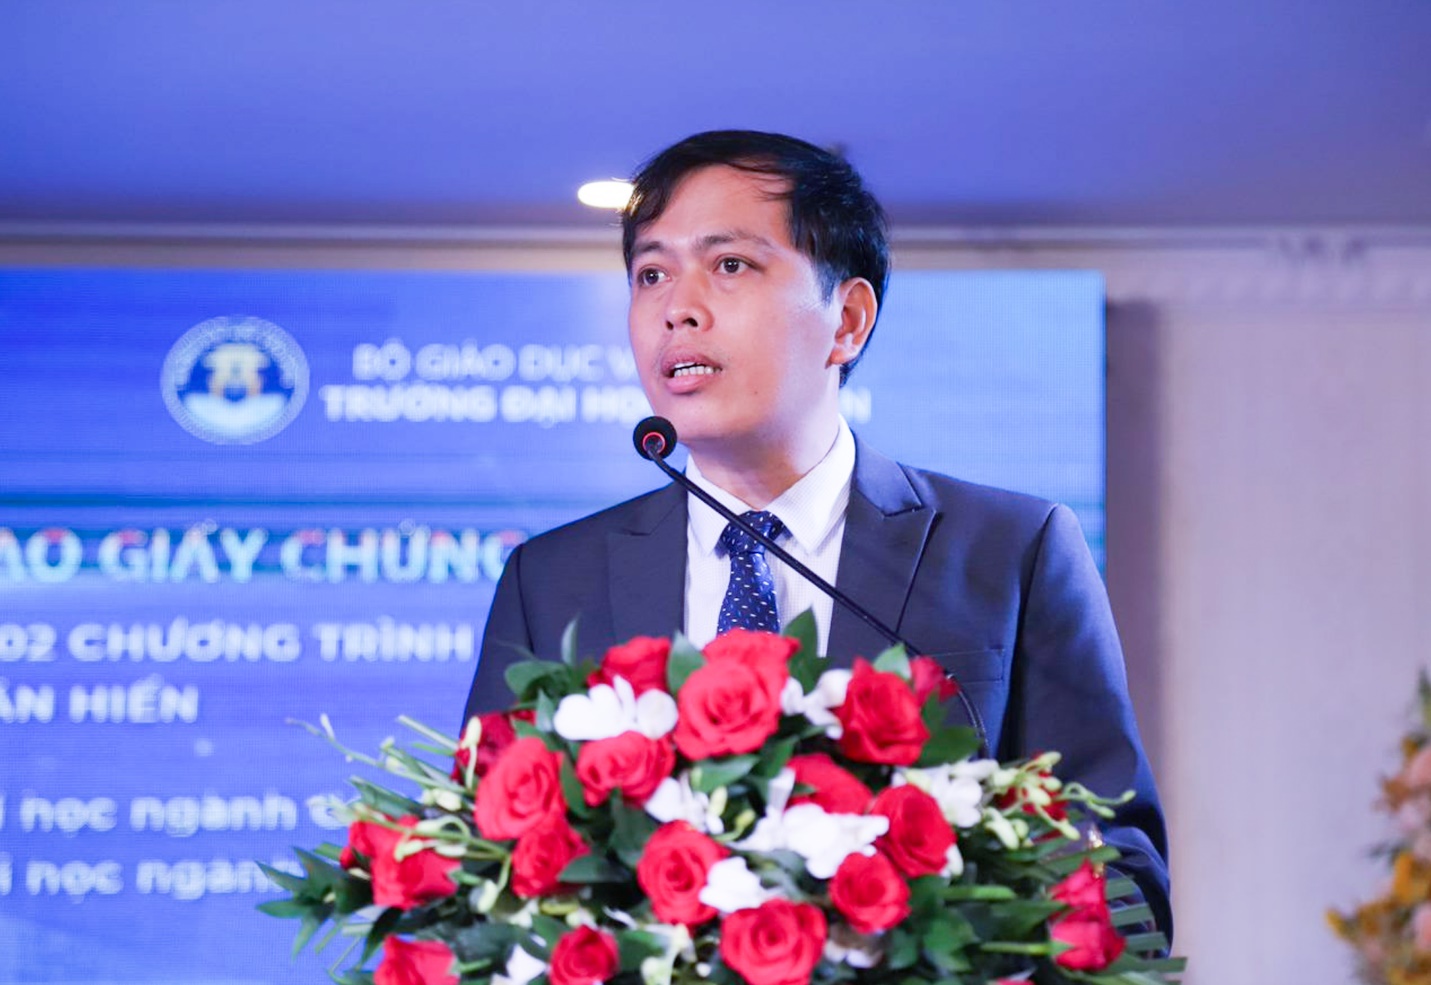 PGS-TS Nguyễn Quang Giao - Phó giám đốc, Phụ trách Trung tâm Kiểm định chất lượng giáo dục - Đại học Đà Nẵng phát biểu trong buổi lễ